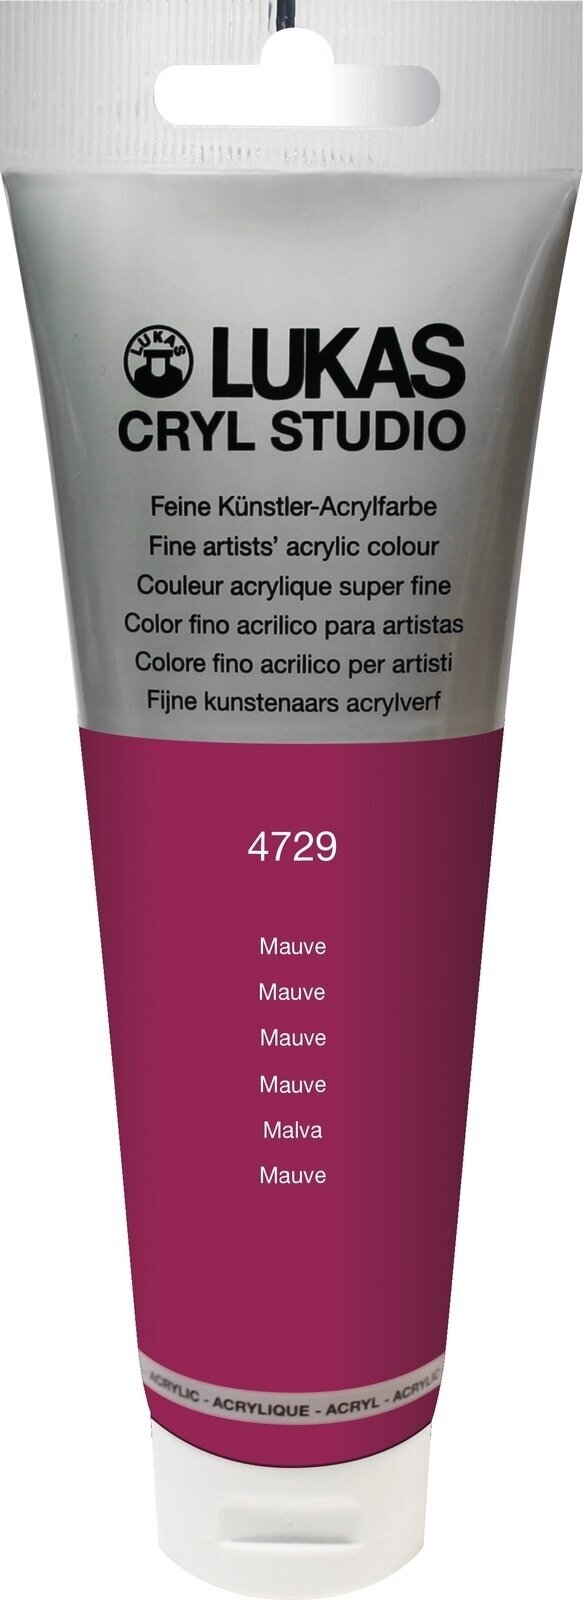 Akrylová farba Lukas Cryl Studio Acrylic Paint Plastic Tube Akrylová farba Mauve 125 ml 1 ks